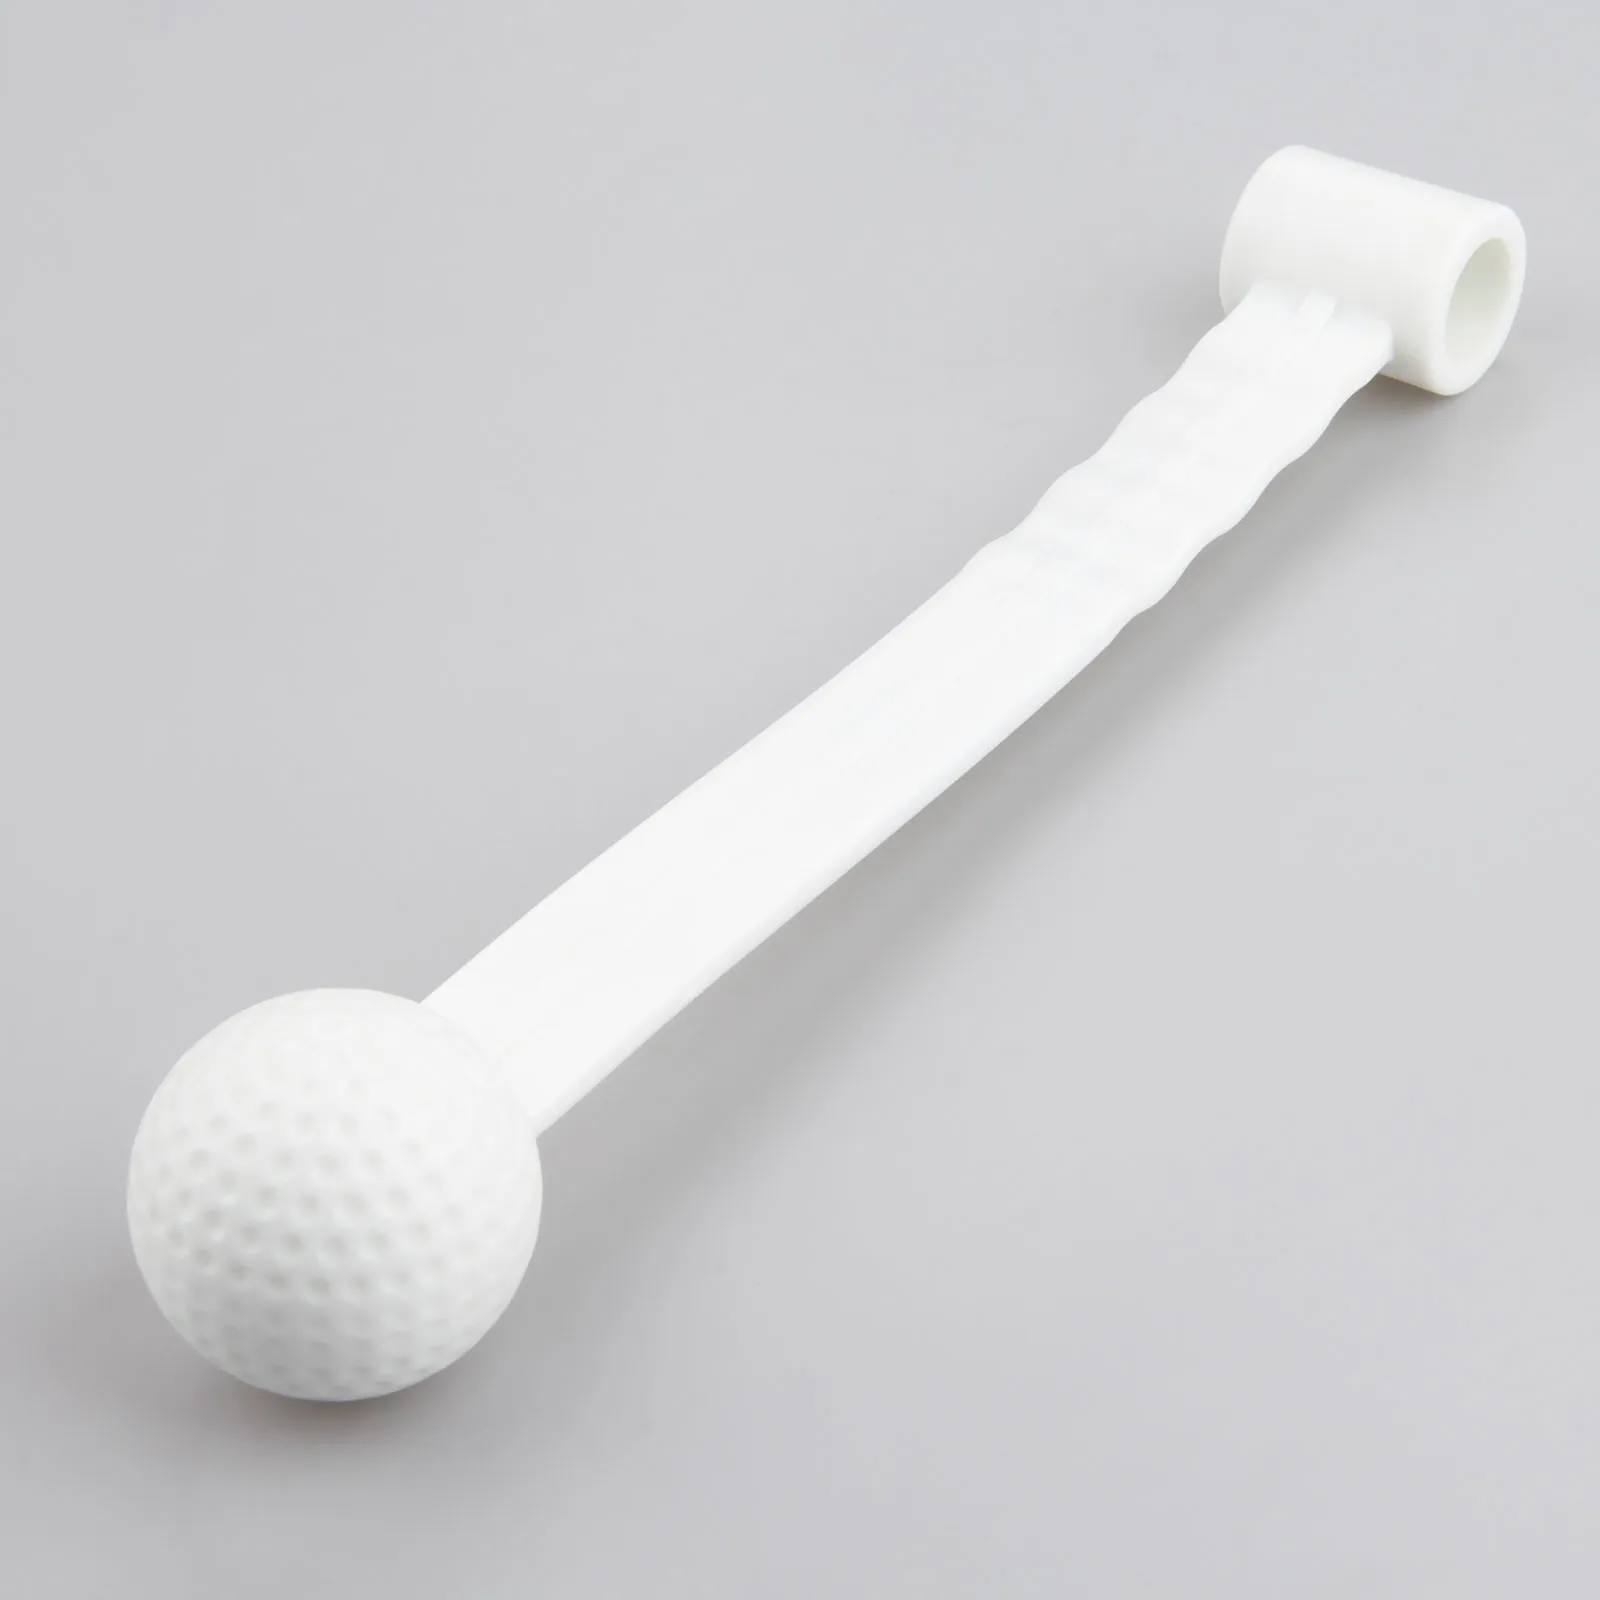 SURIEEN 1 шт. Пластик Гольф взмах положить стержень с инструментами, начинающих Обучающие приспособления для игры в гольф мяч с палкой аксессуары для гольфа